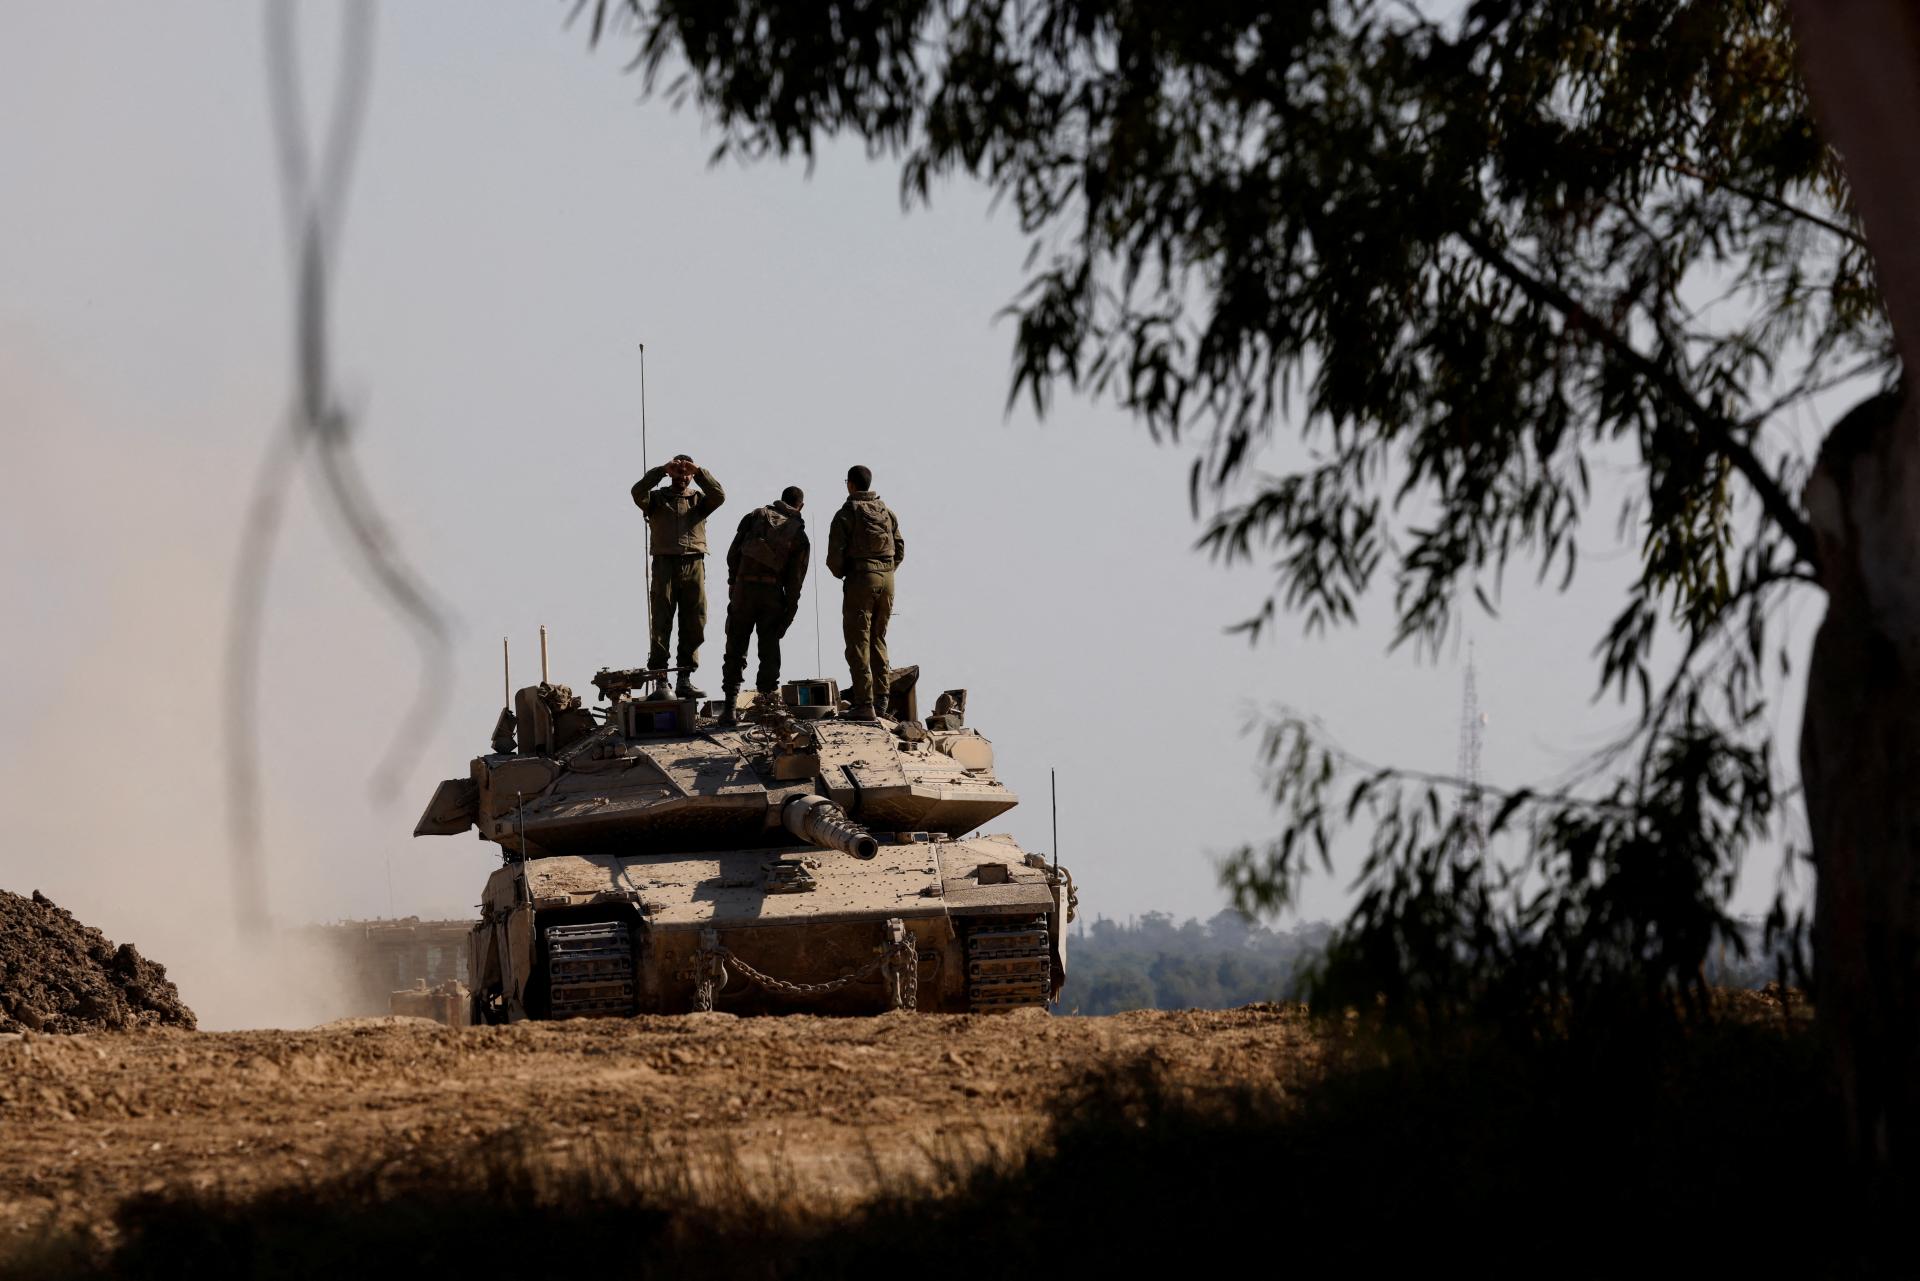 Bidenov plán o prímerí v Pásme Gazy sú len slová. Hamas nedostal záruky, tvrdí vysokopostavený predstaviteľ